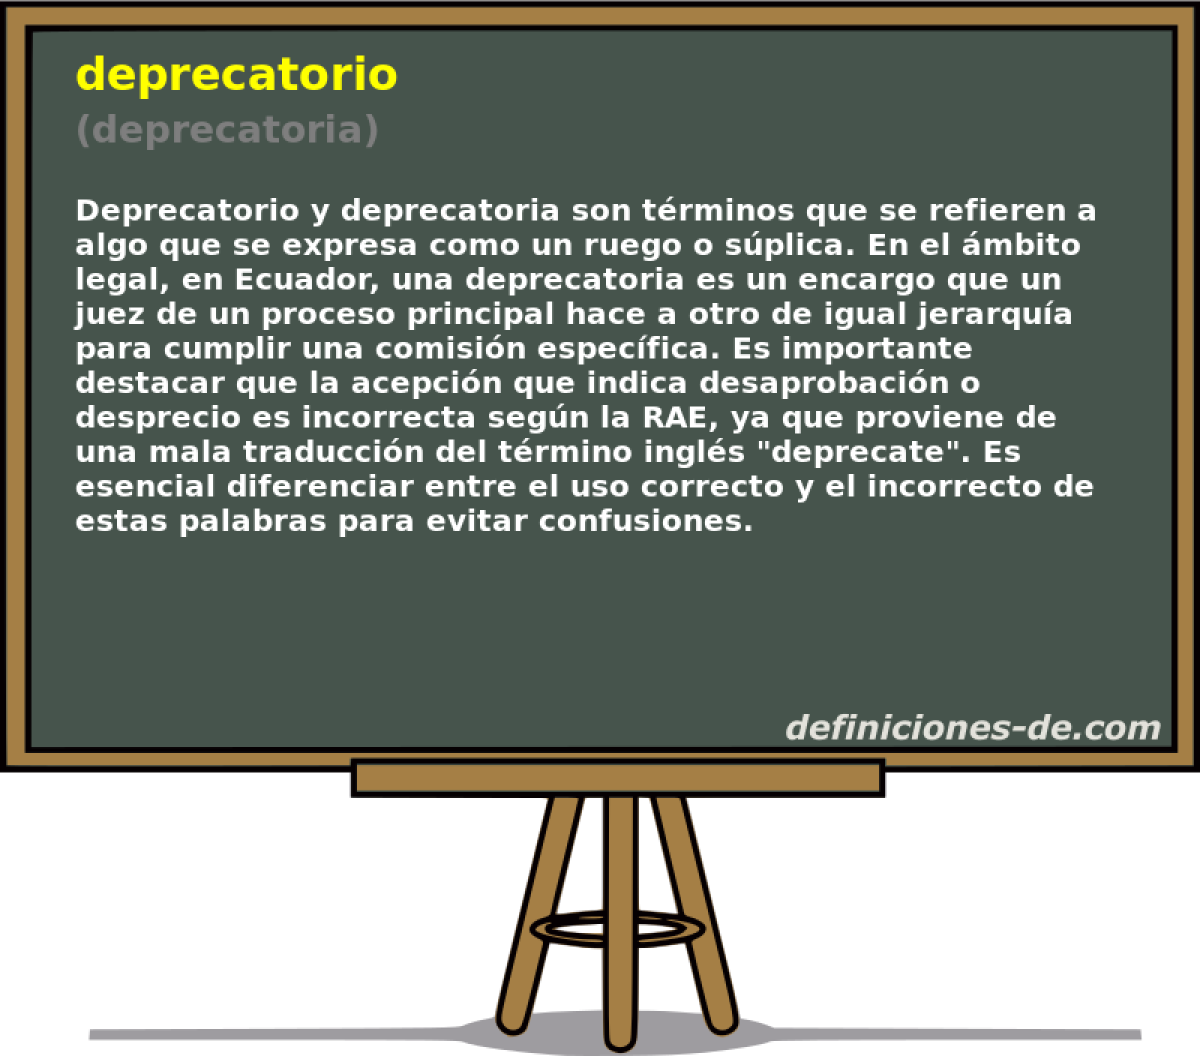 deprecatorio (deprecatoria)